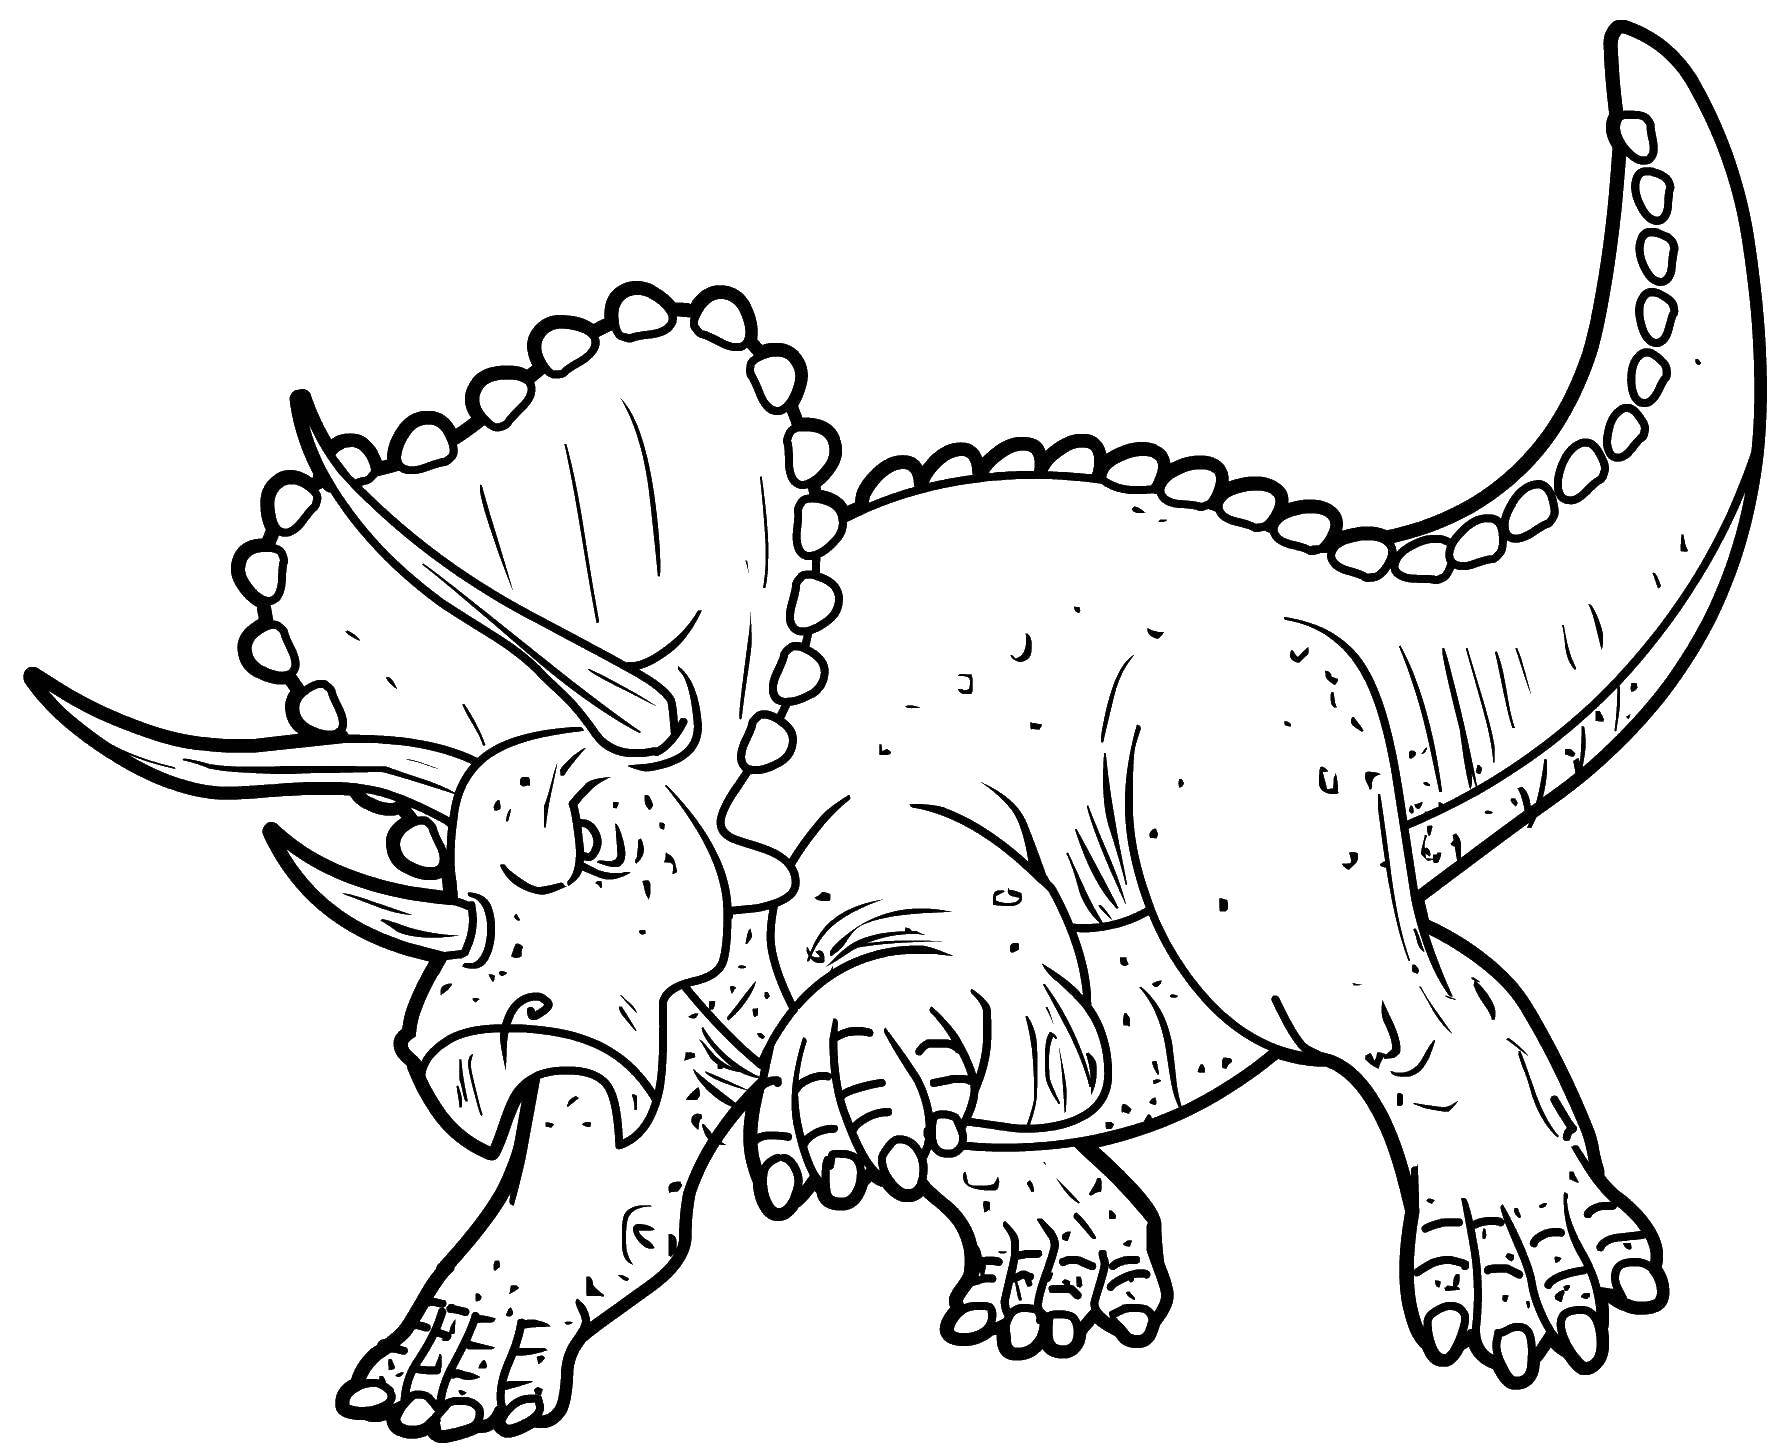   Самый большой динозавр